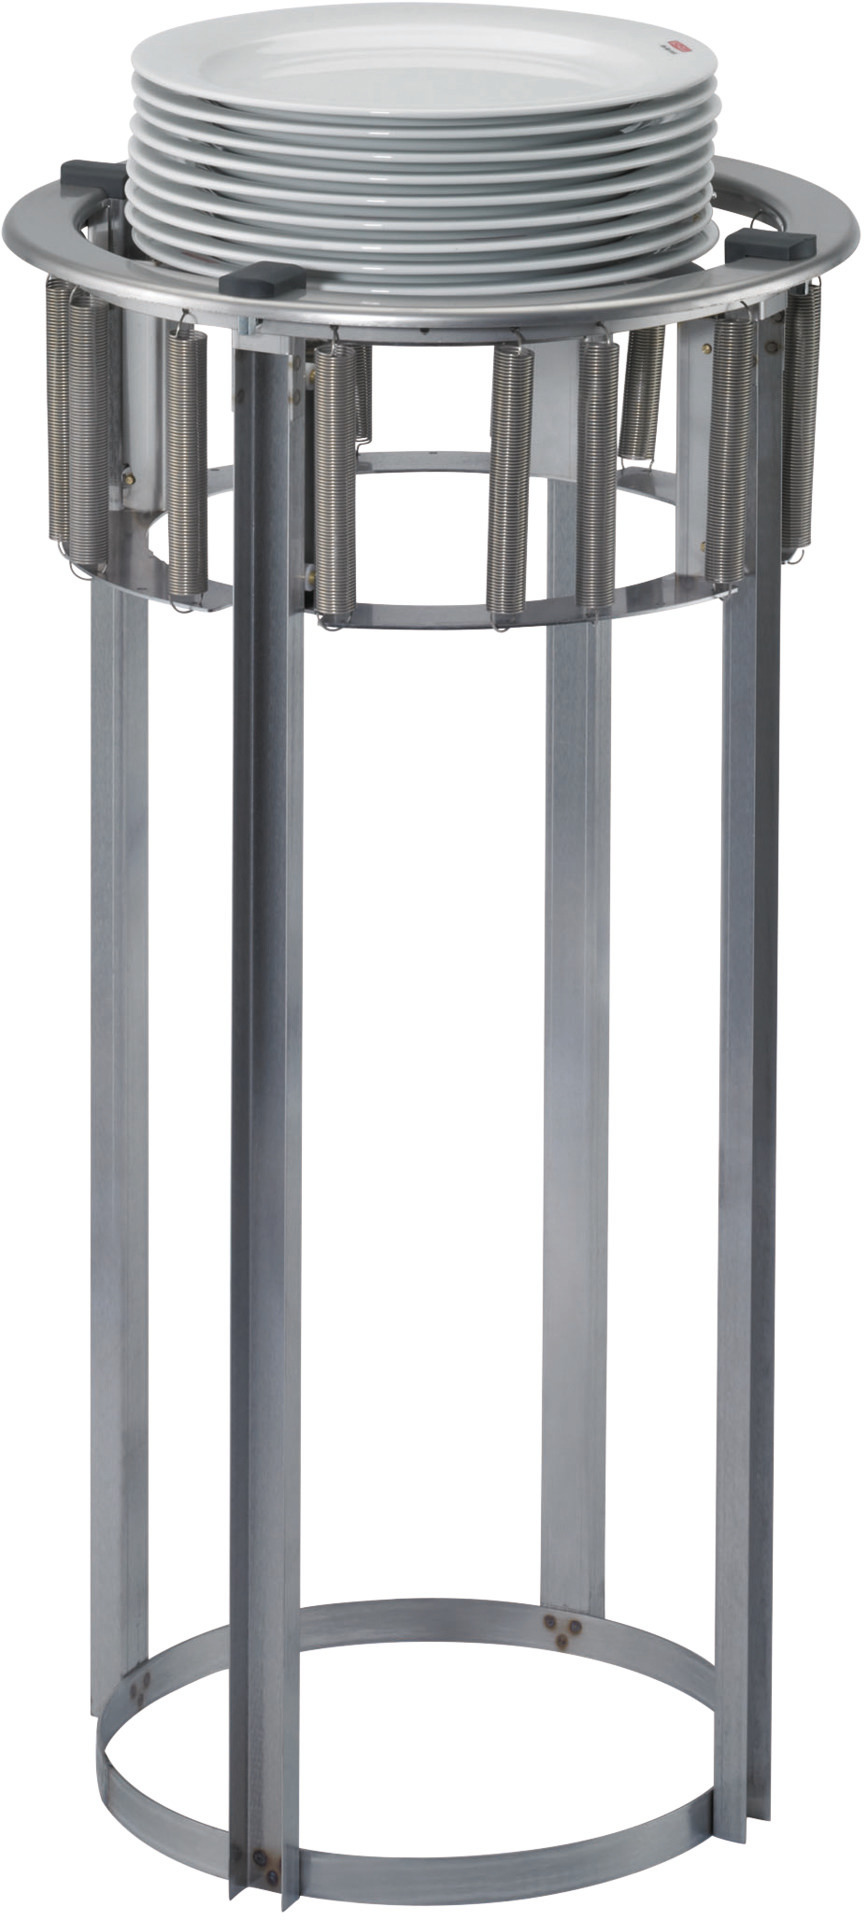 Teller-Einbauspender unbeheizt für 50 Teller 230 - 278 mm Einbautiefe 760 mm